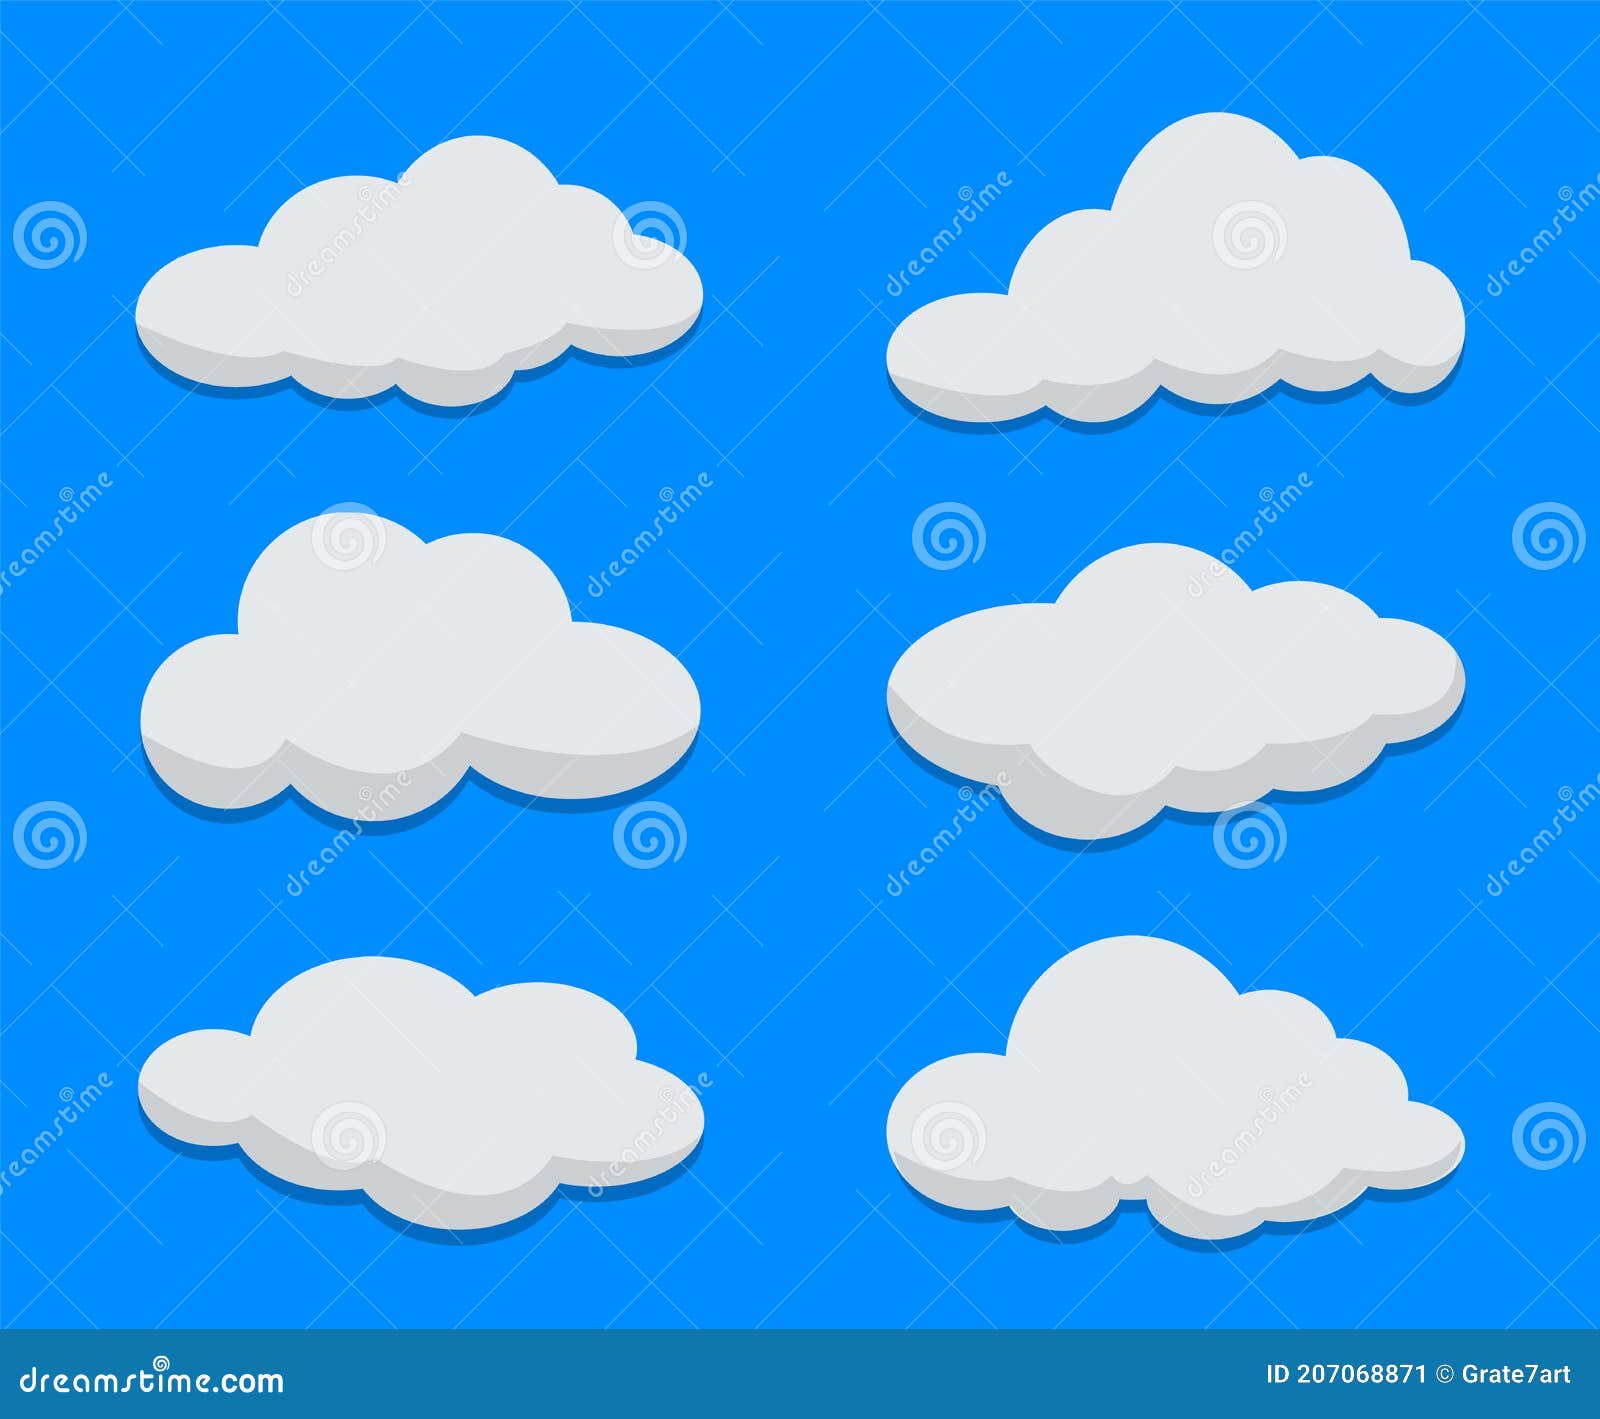 Conjunto De Nubes Planas De Dibujos Animados Sobre Fondo Azul. Plantillas  De Nube Para Diseño. Colección De Nubes Vectoriales Ondu Stock de  ilustración - Ilustración de conjunto, cubo: 207068871